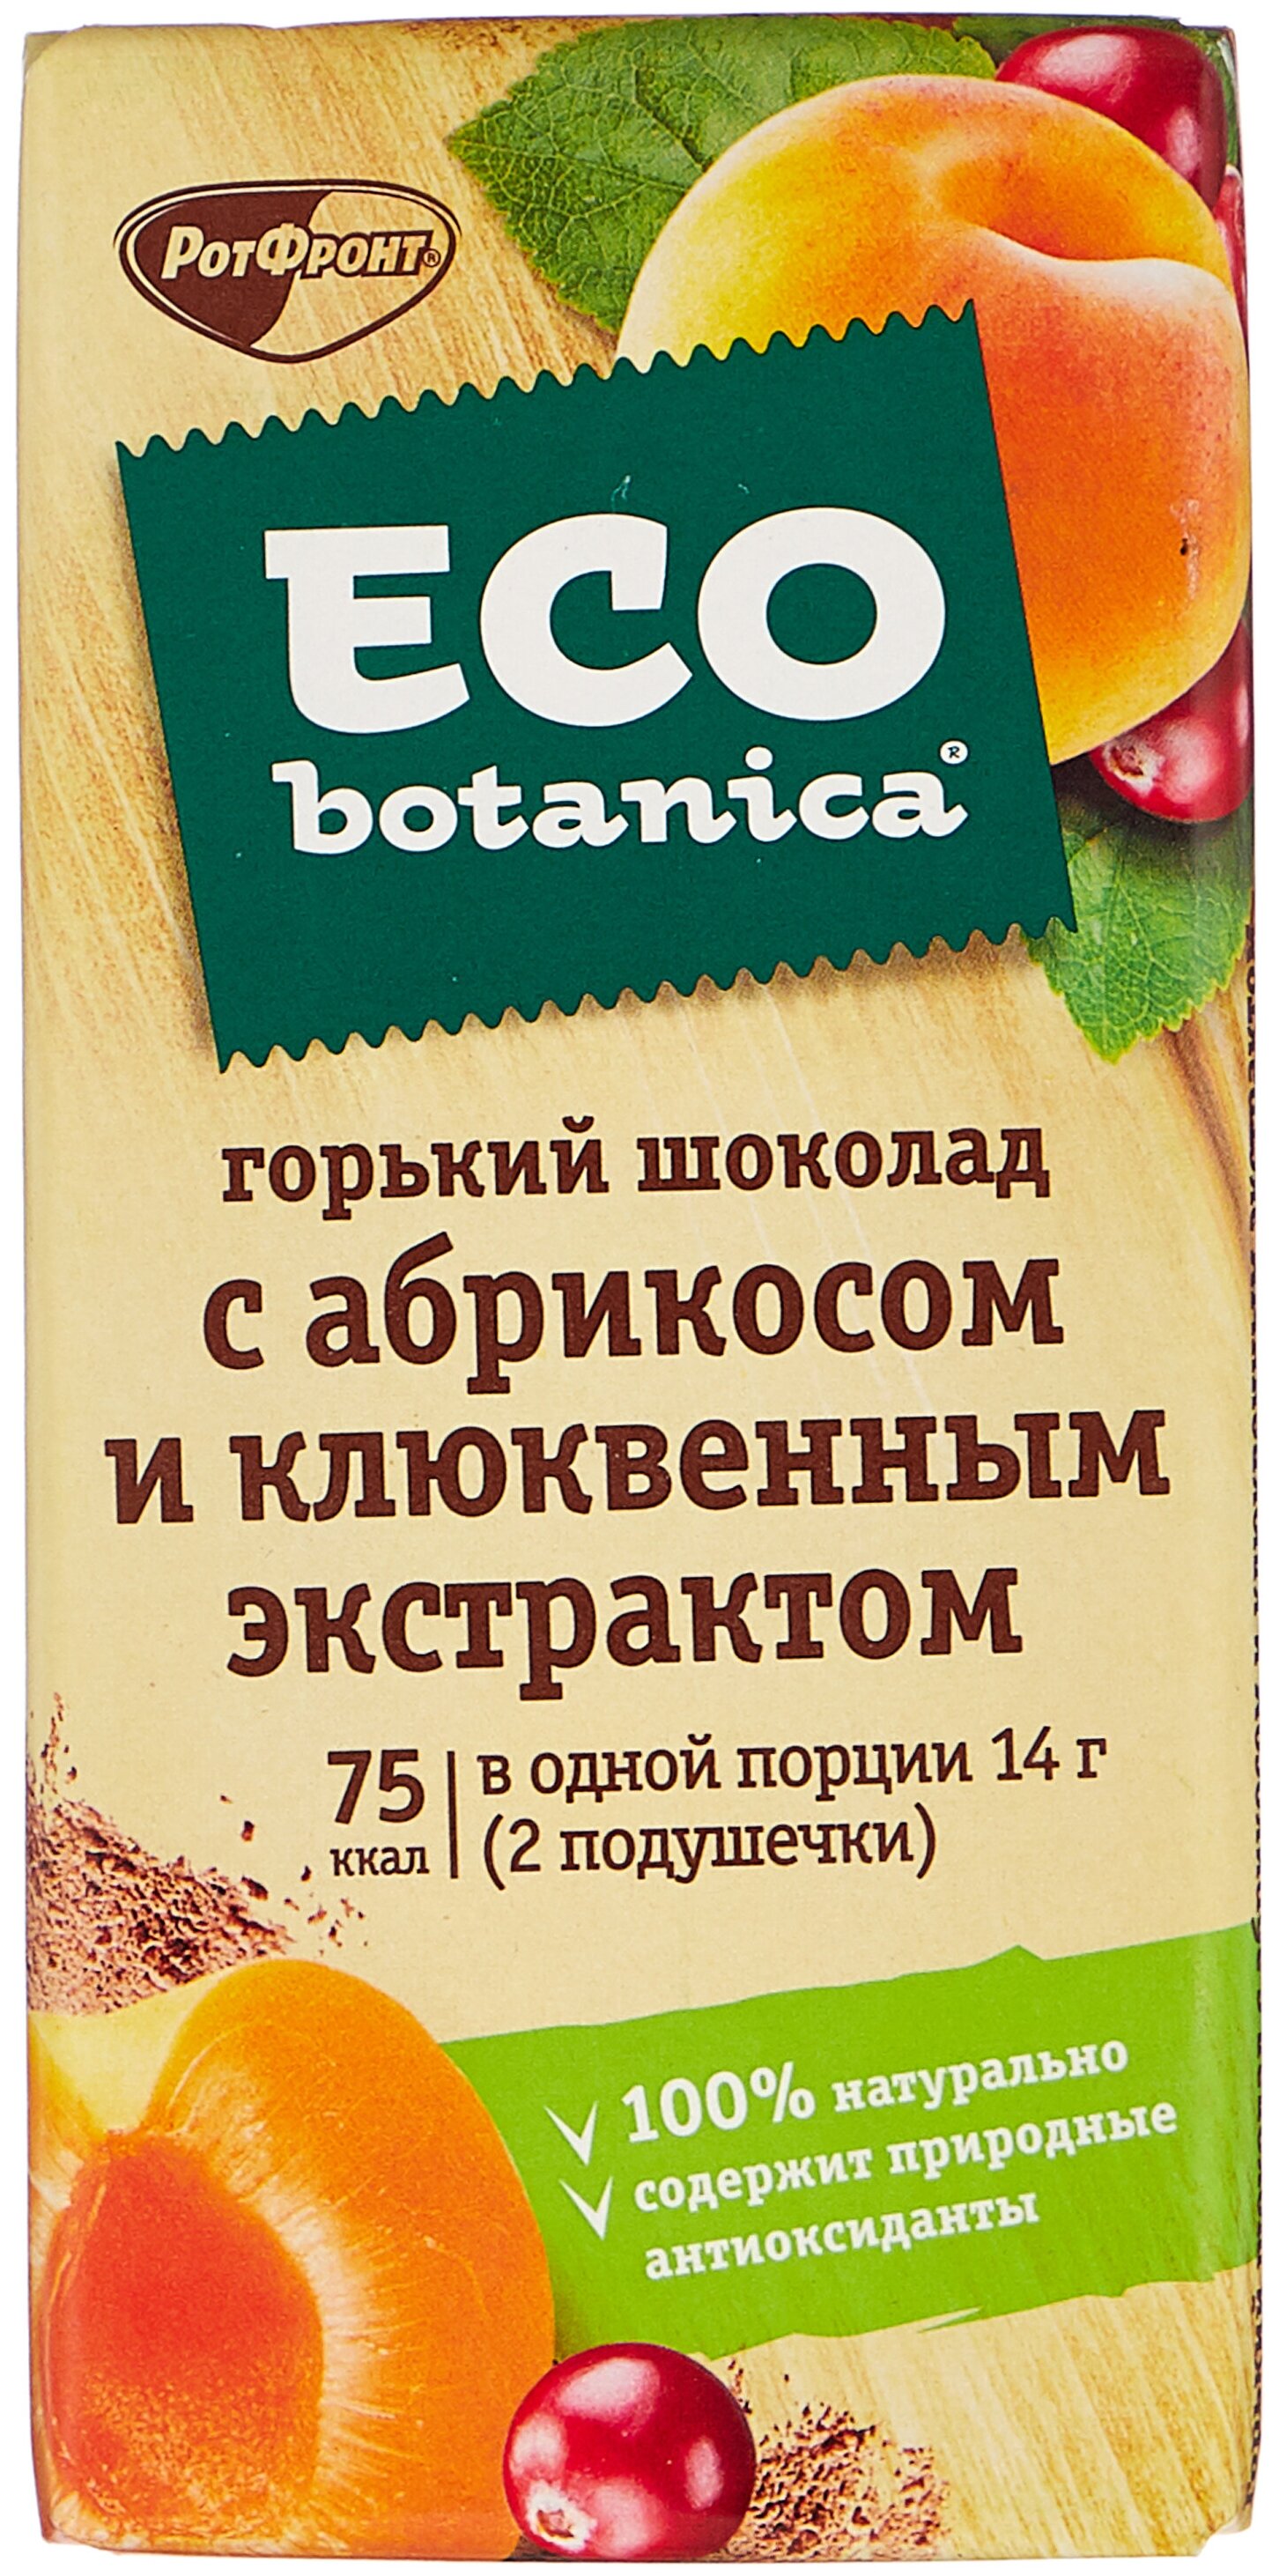 Eco botanica "С абрикосом и клюквенным экстрактом" - содержание какао: 55 %